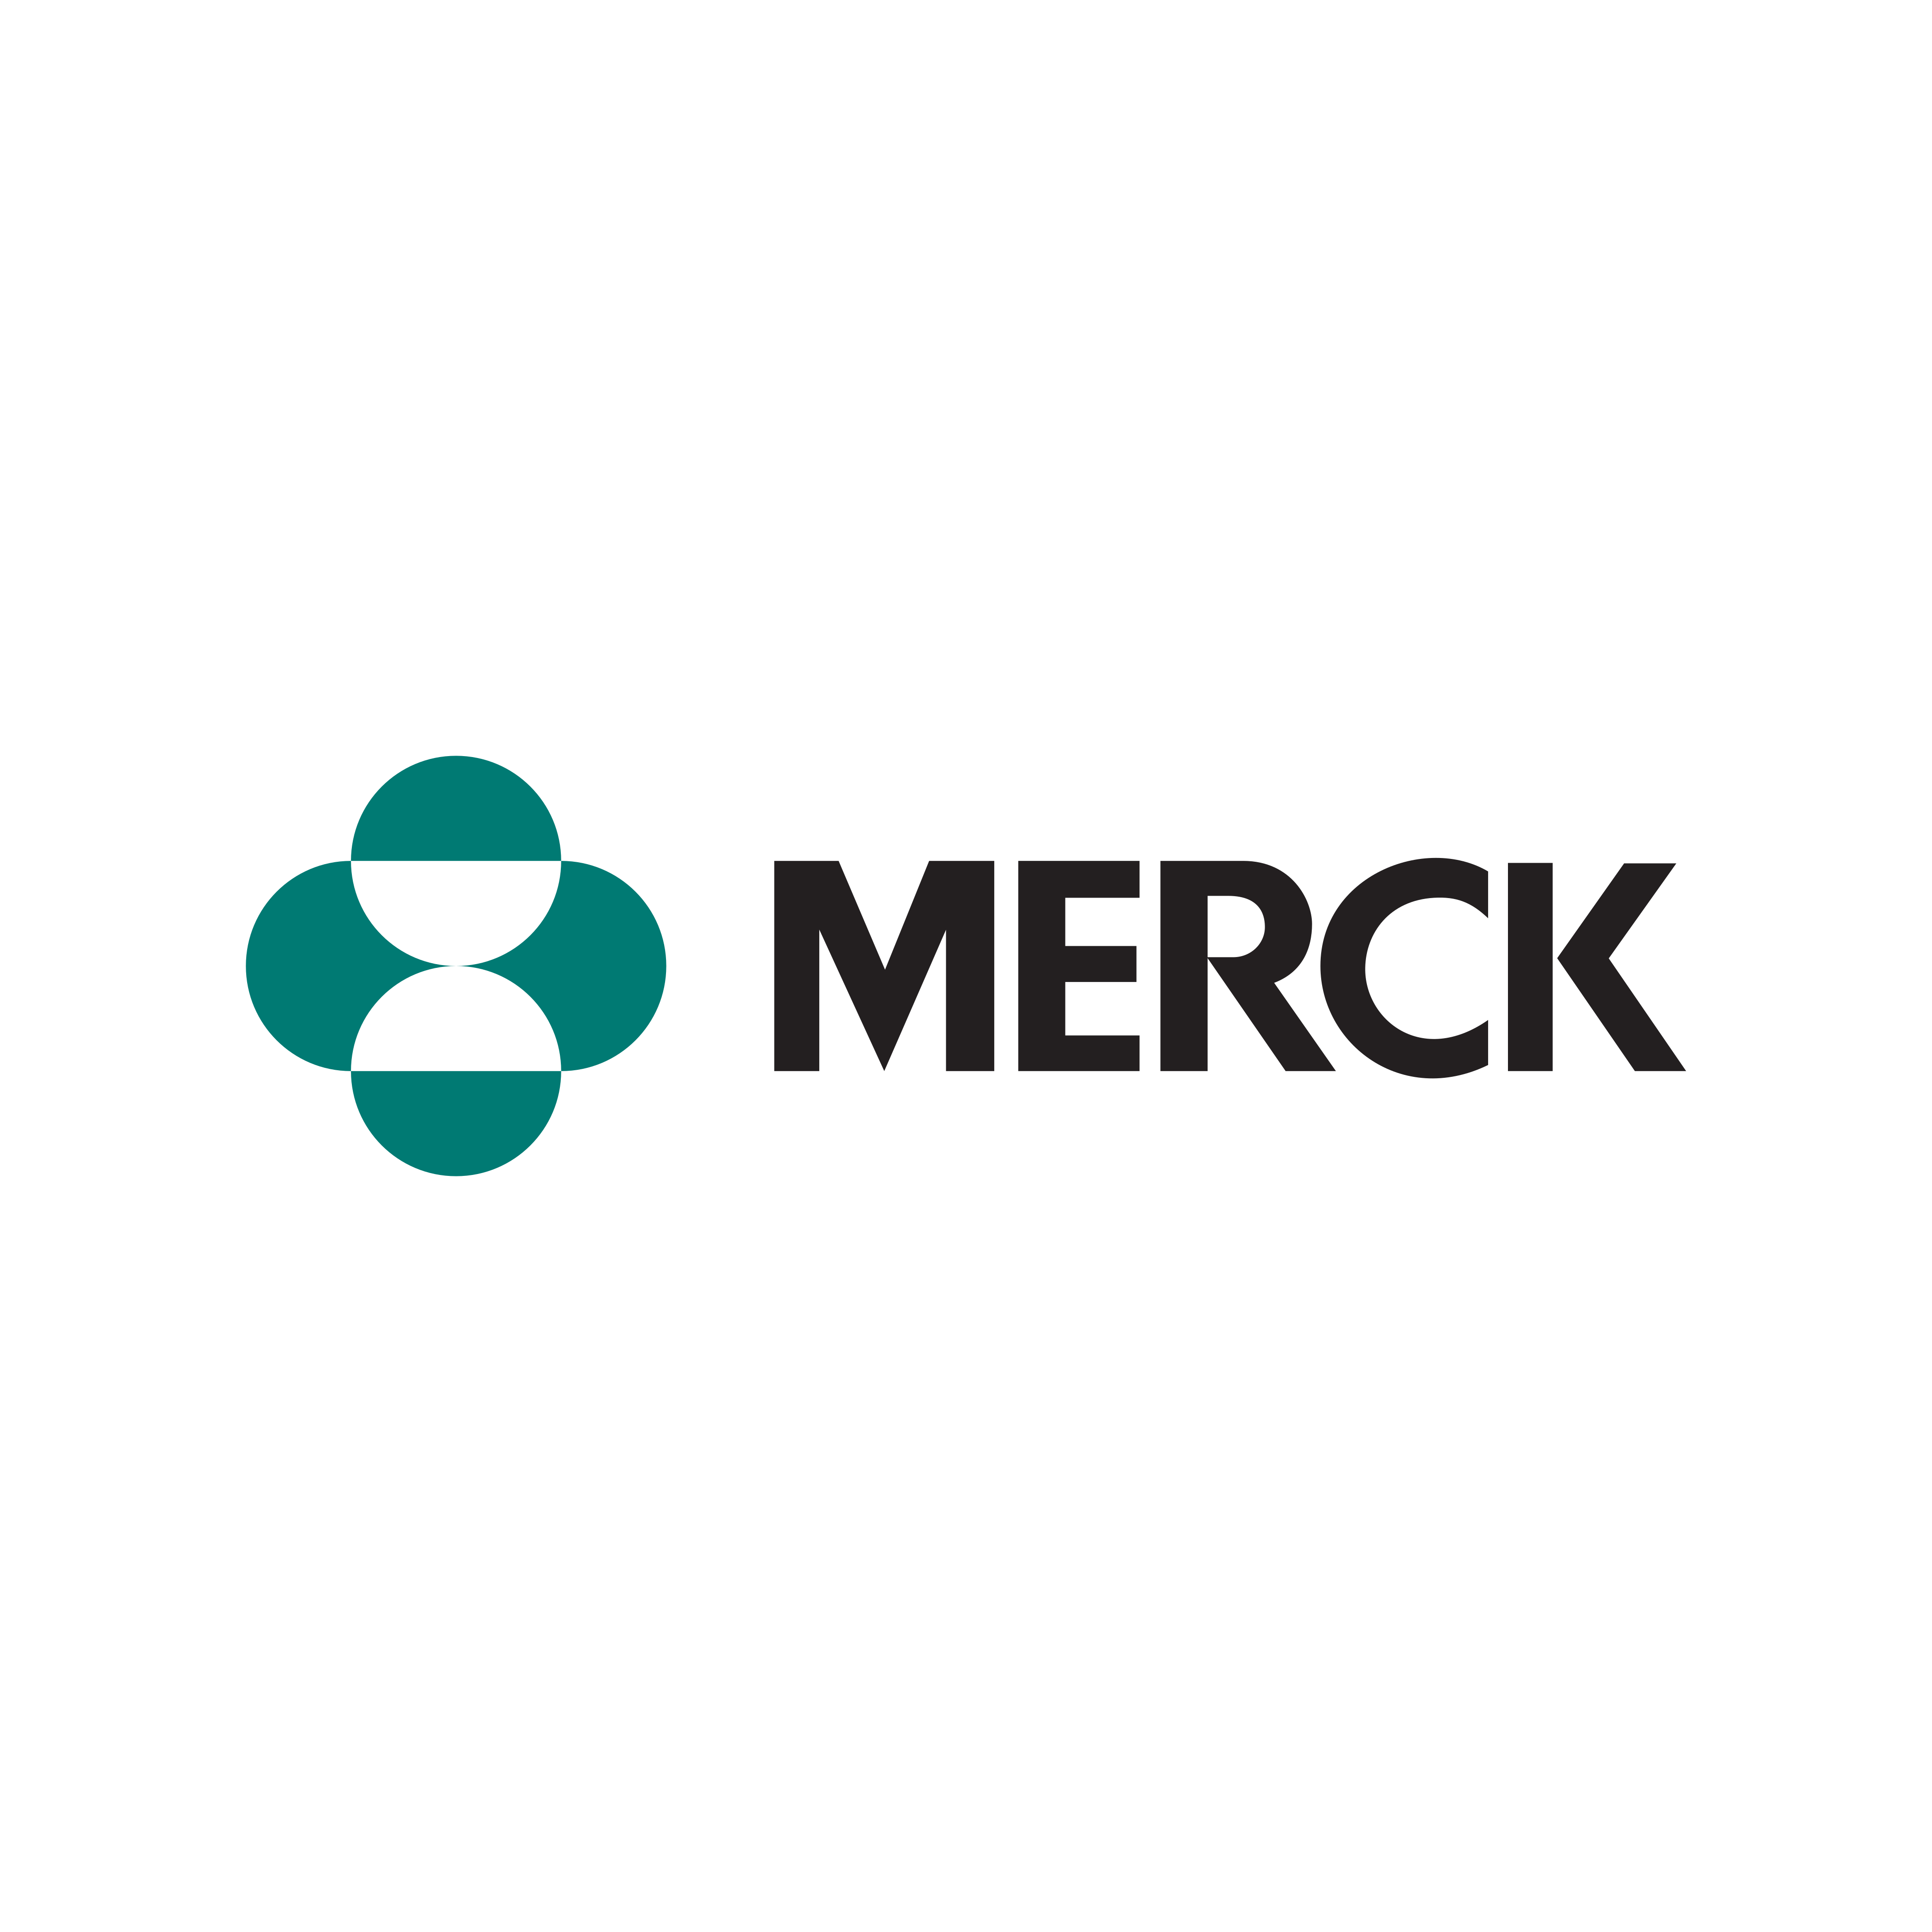 merck logo 0 - Merck Logo